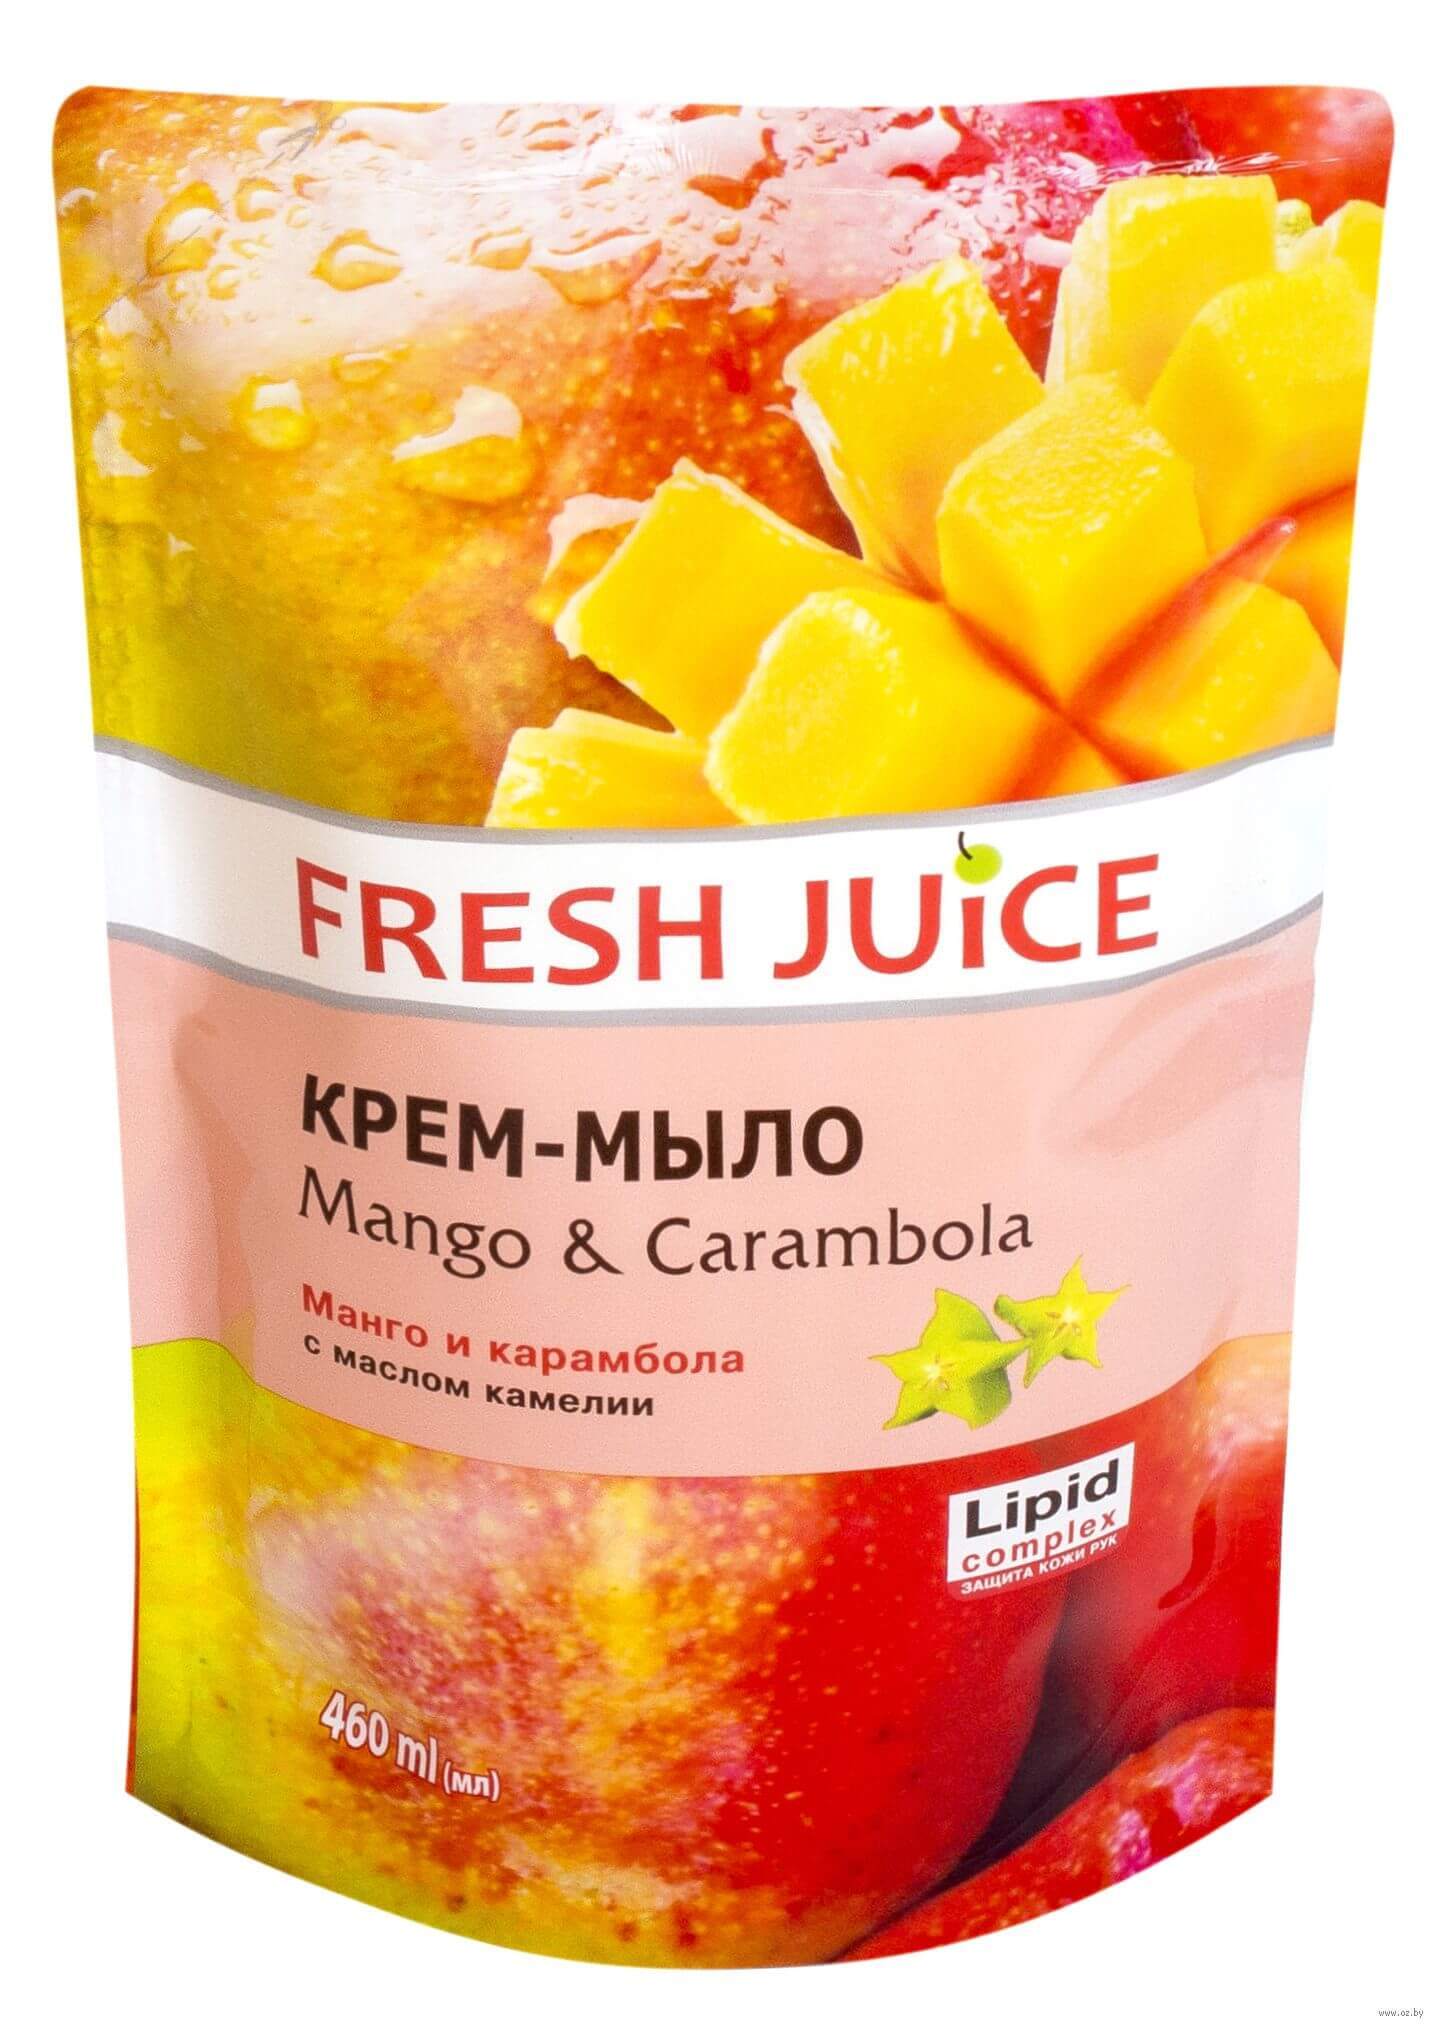 

Крем-мило Fresh Juice Mango & Carambola, 460 мл, крем-мило дой-пак 460 мл, Mango & Carambola